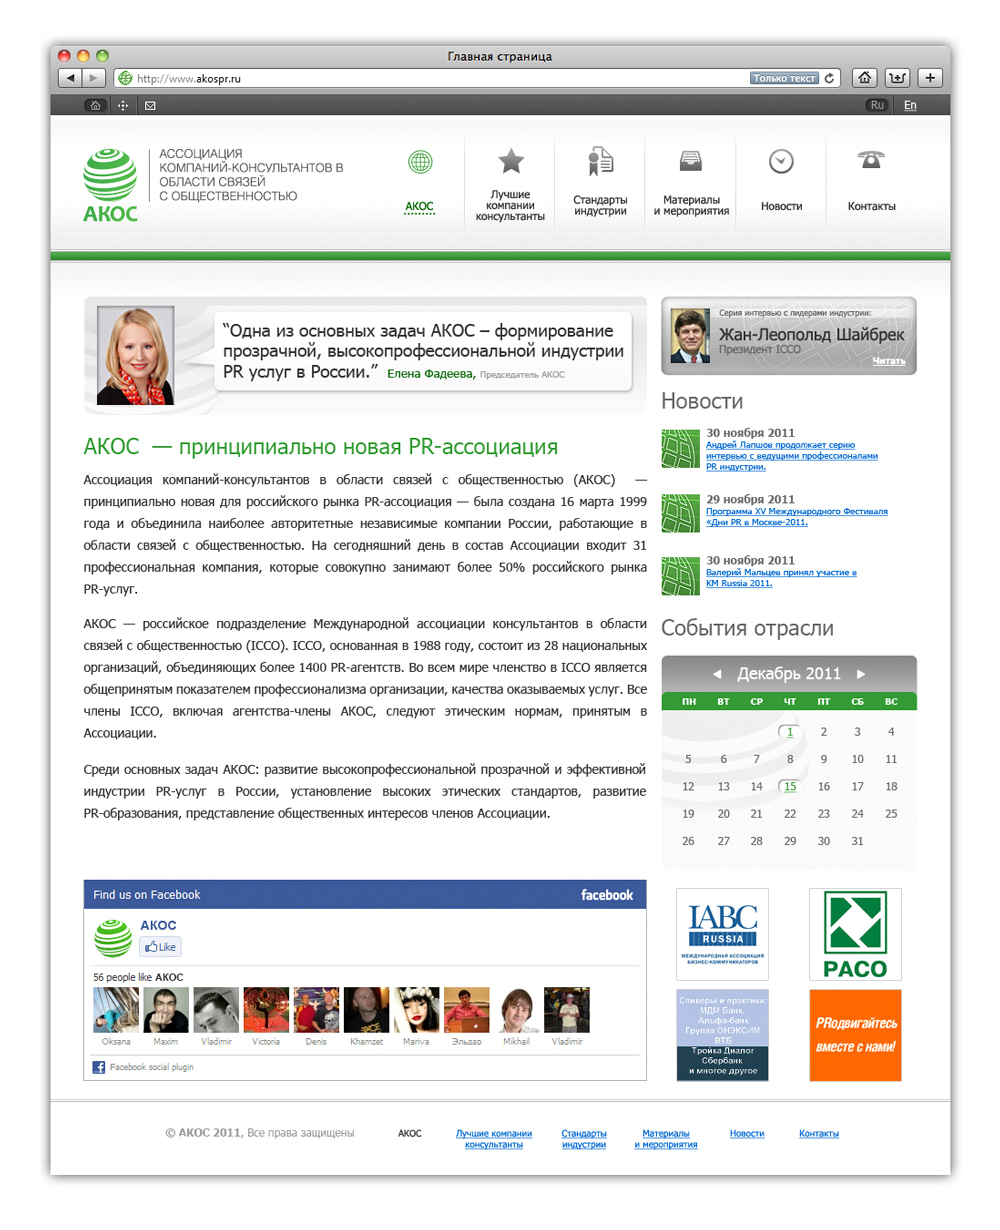 АКОС - ассоциация компаний-консультантов в области связей с общественностью